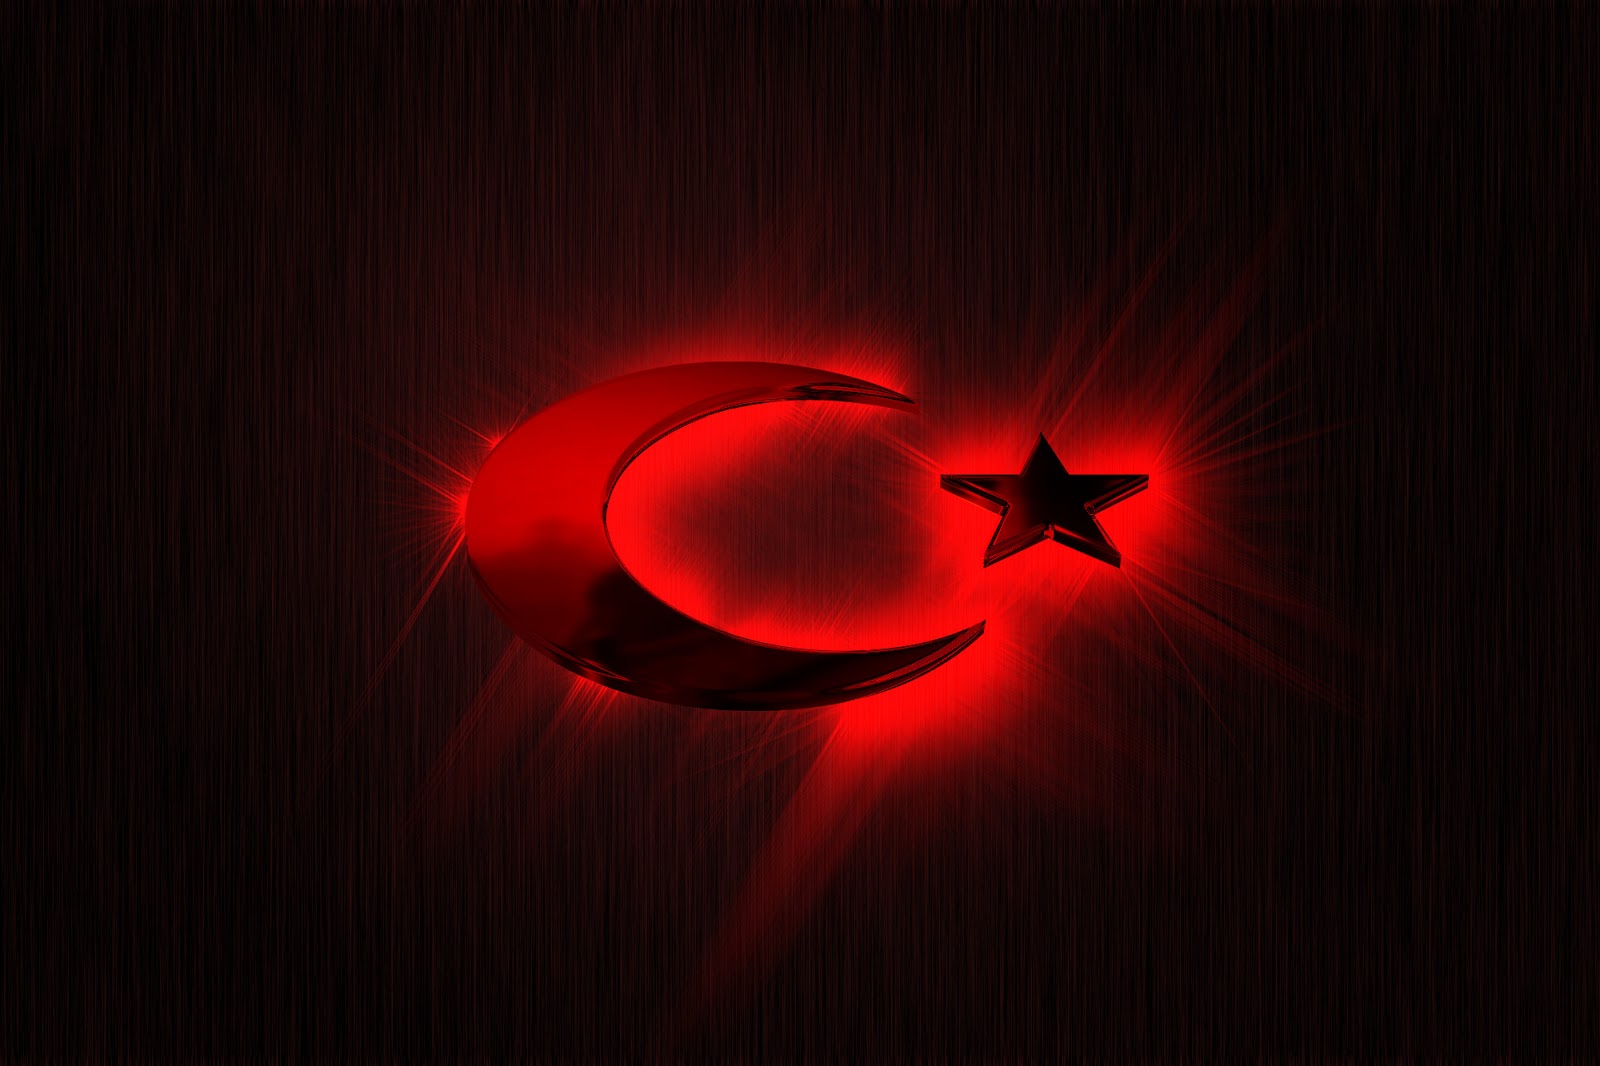 turk-bayraklari-6.jpg